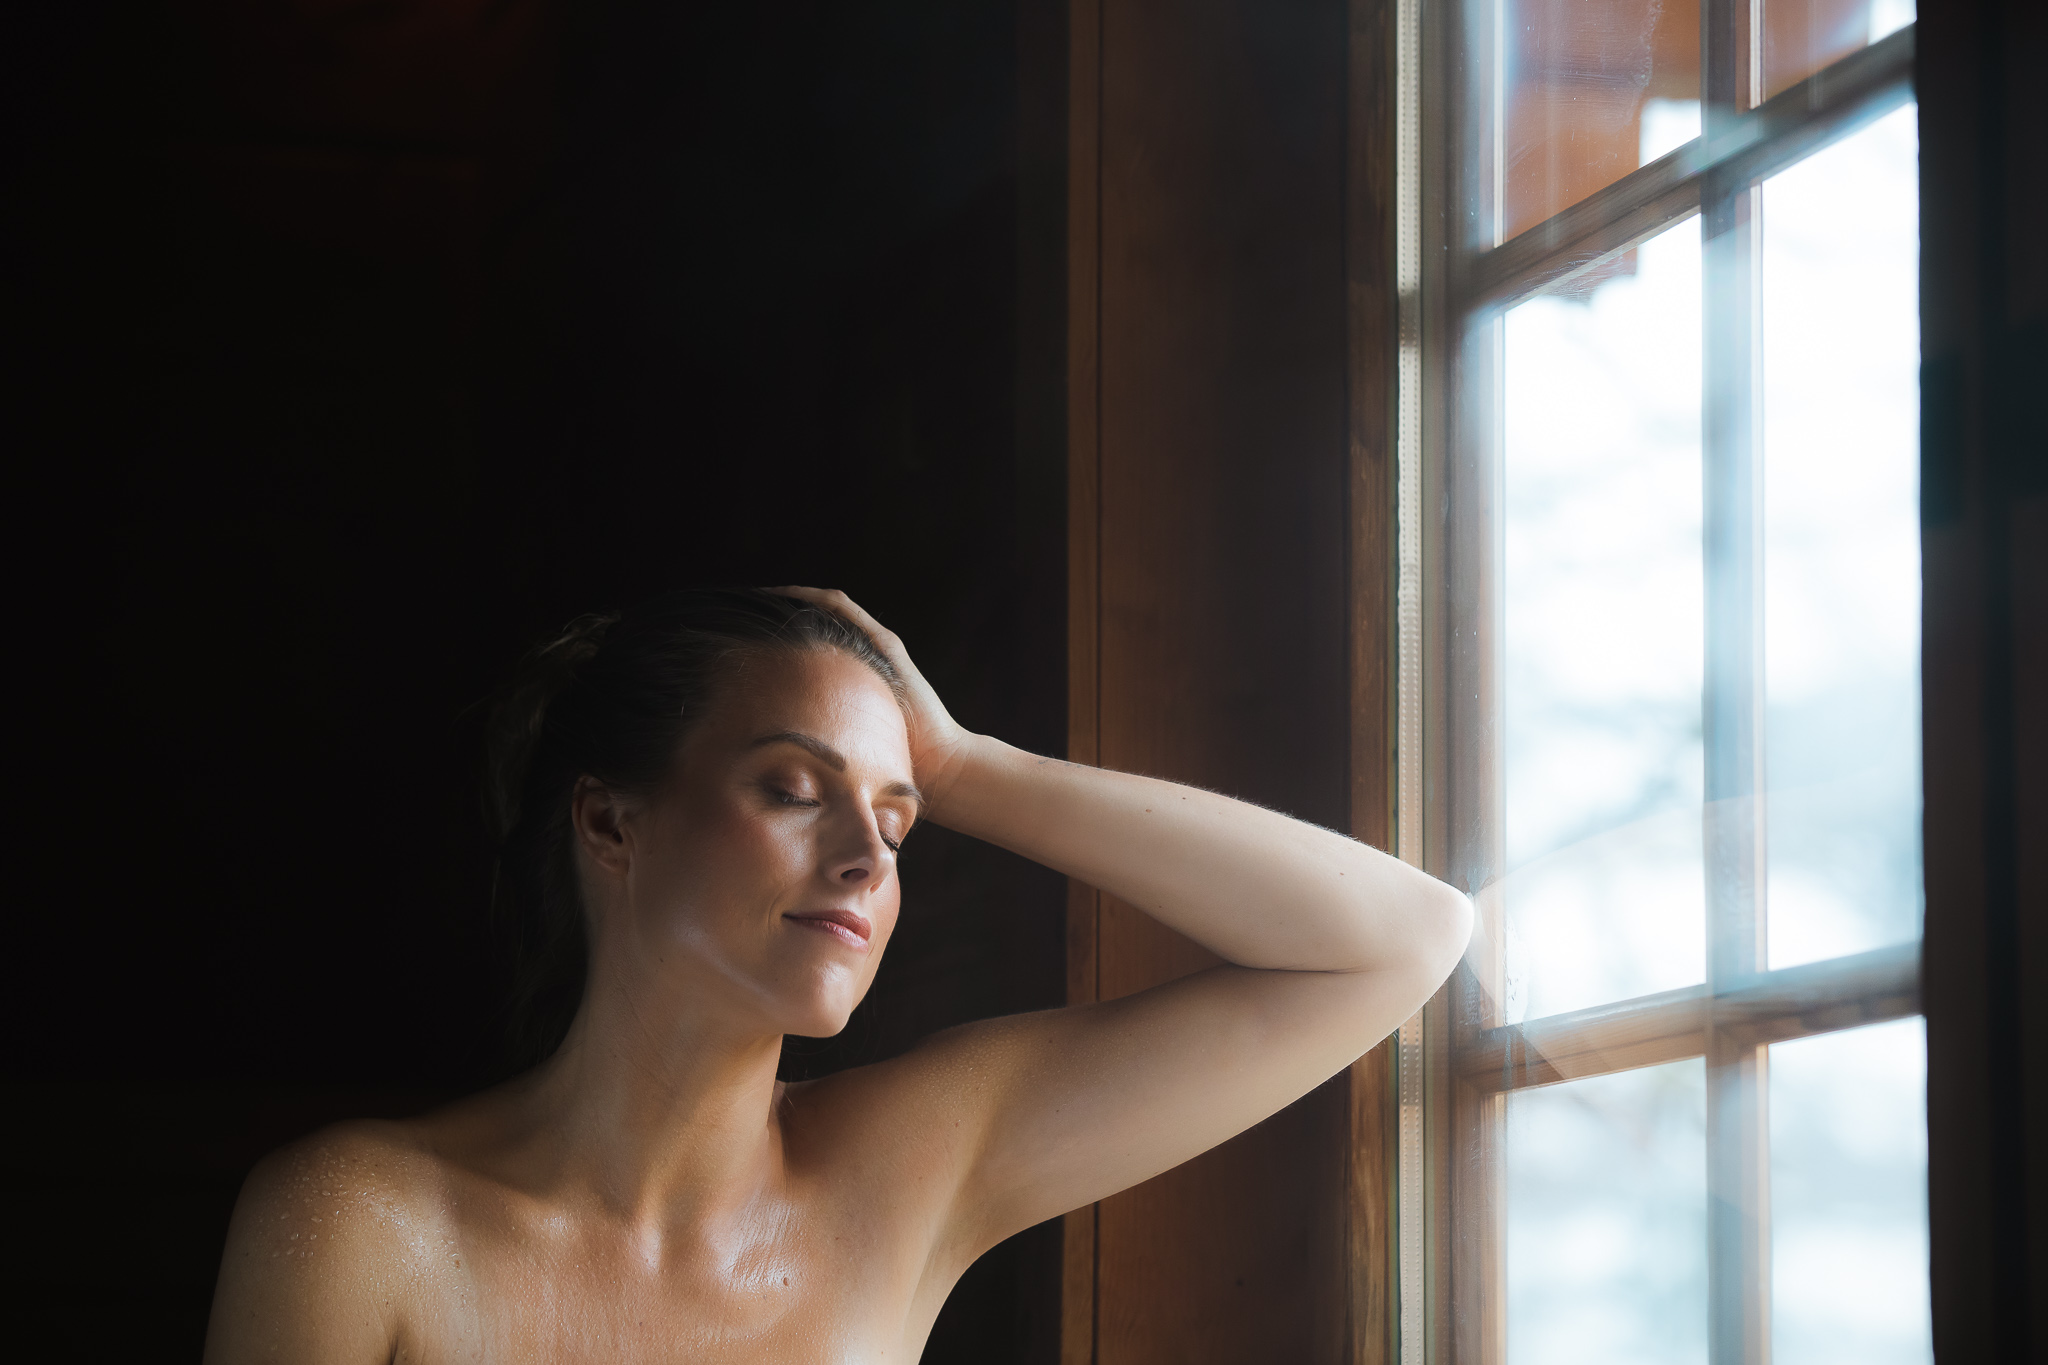 Vrouw geniet met gesloten ogen voor het raam in de Stuga sauna.